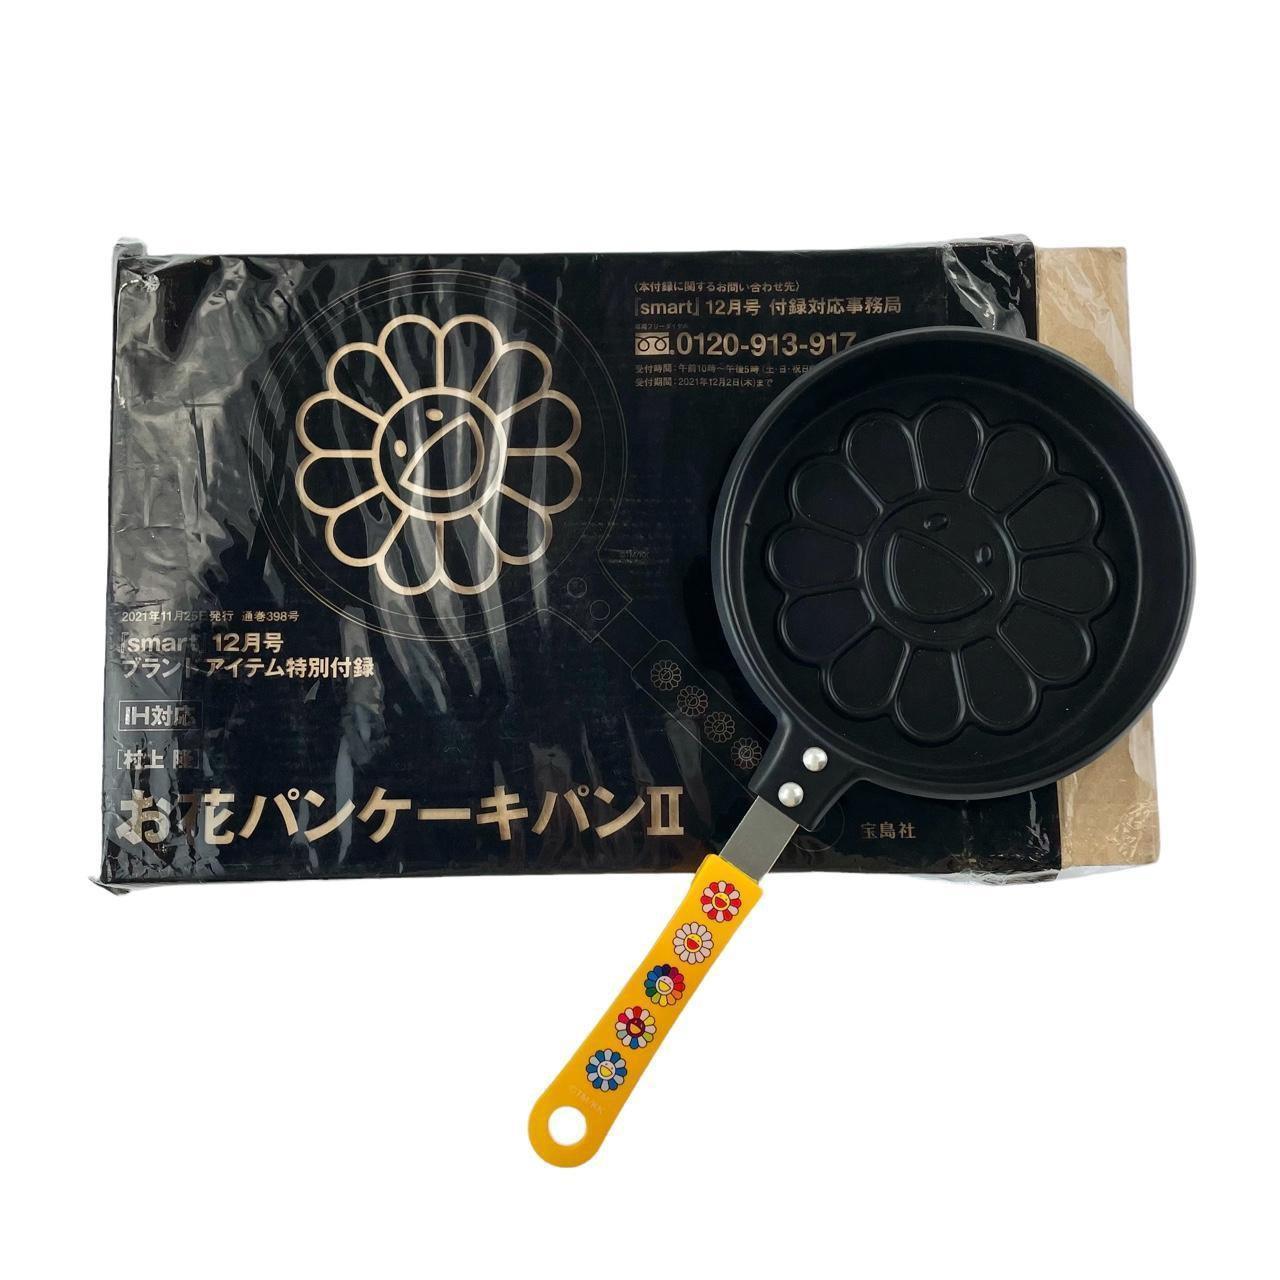 Takashi Murakami Flower Frying Pan - Known Source